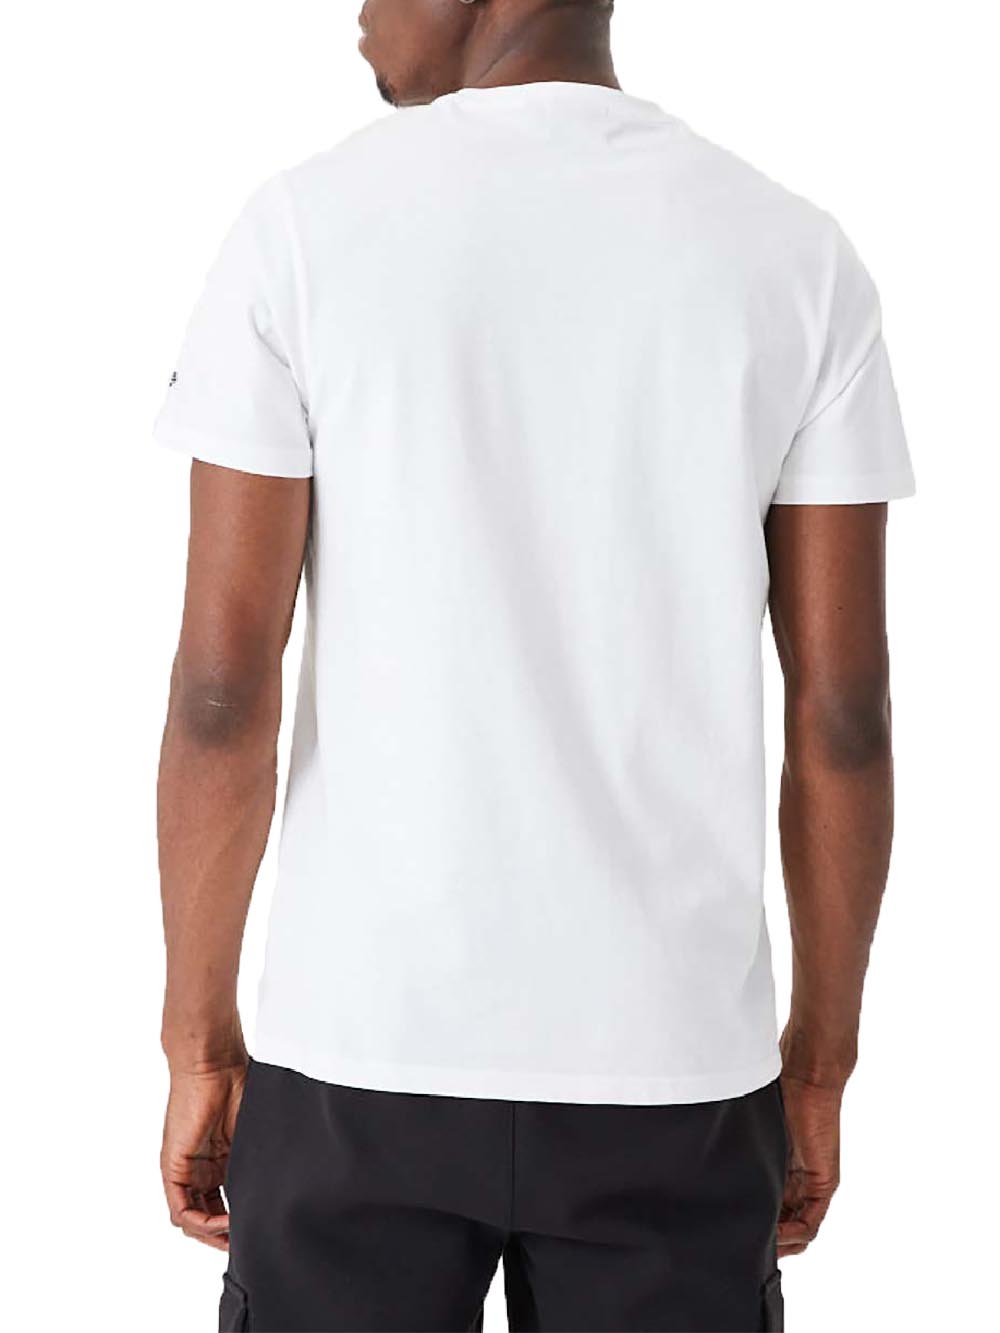 New Era T-shirt Unisex Bianco